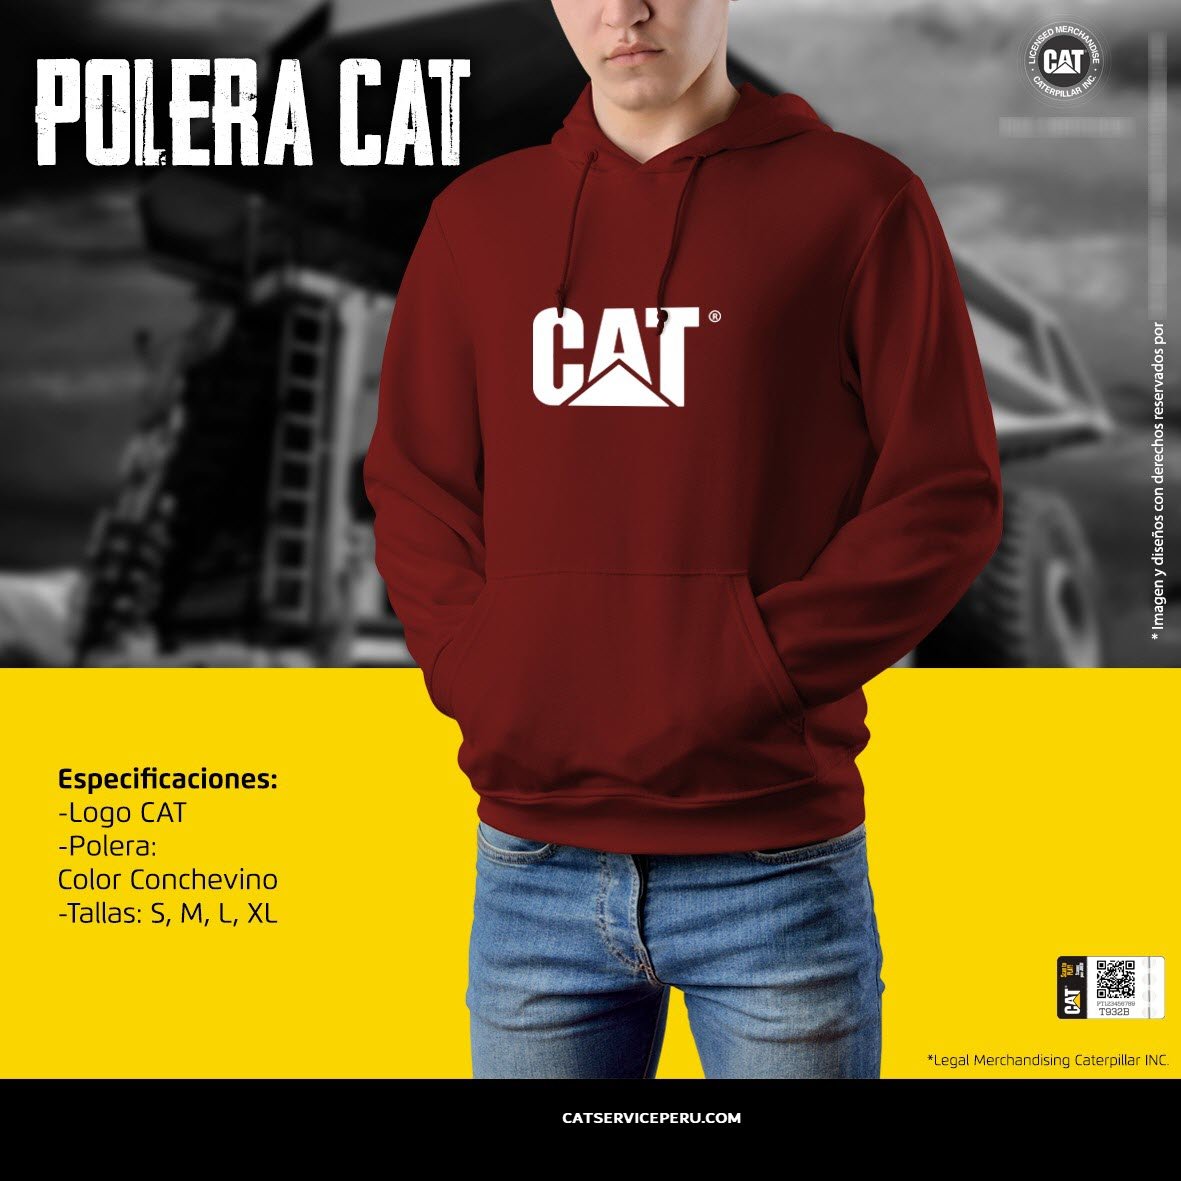 Polera Cat Conche Vino - CAT SERVICE PERU S.A.C.